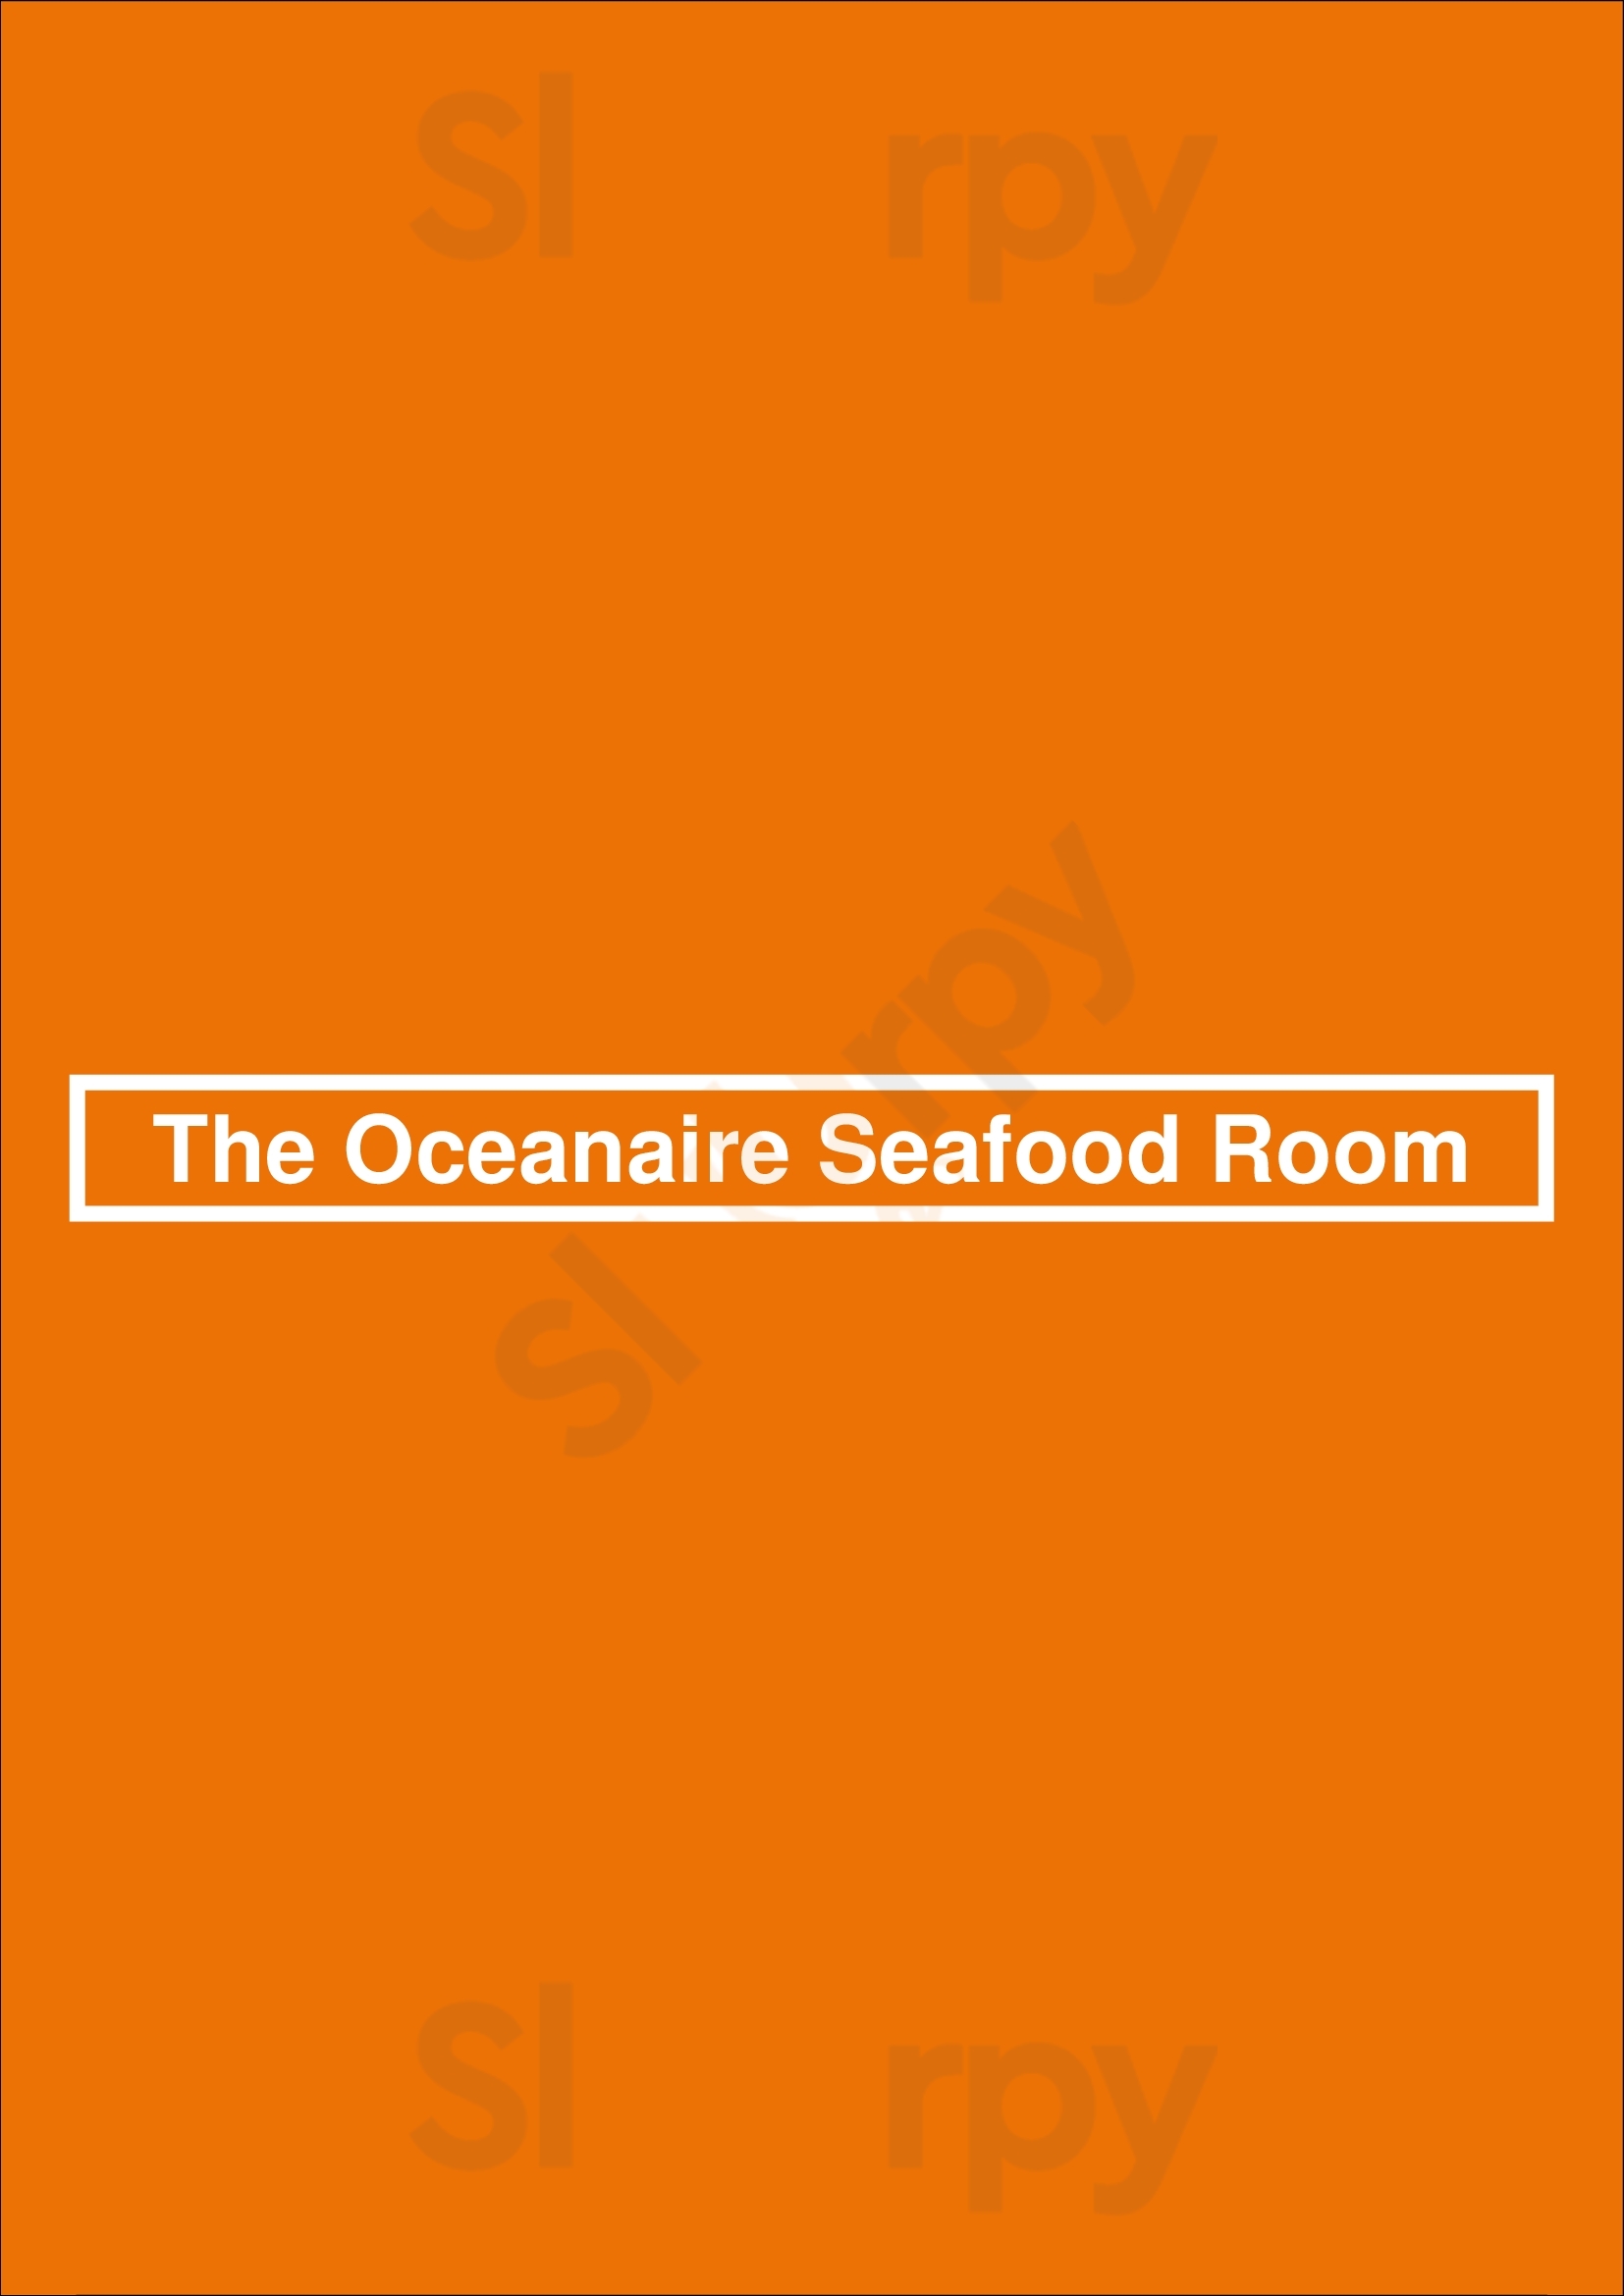 The Oceanaire Seafood Room Houston Menu - 1